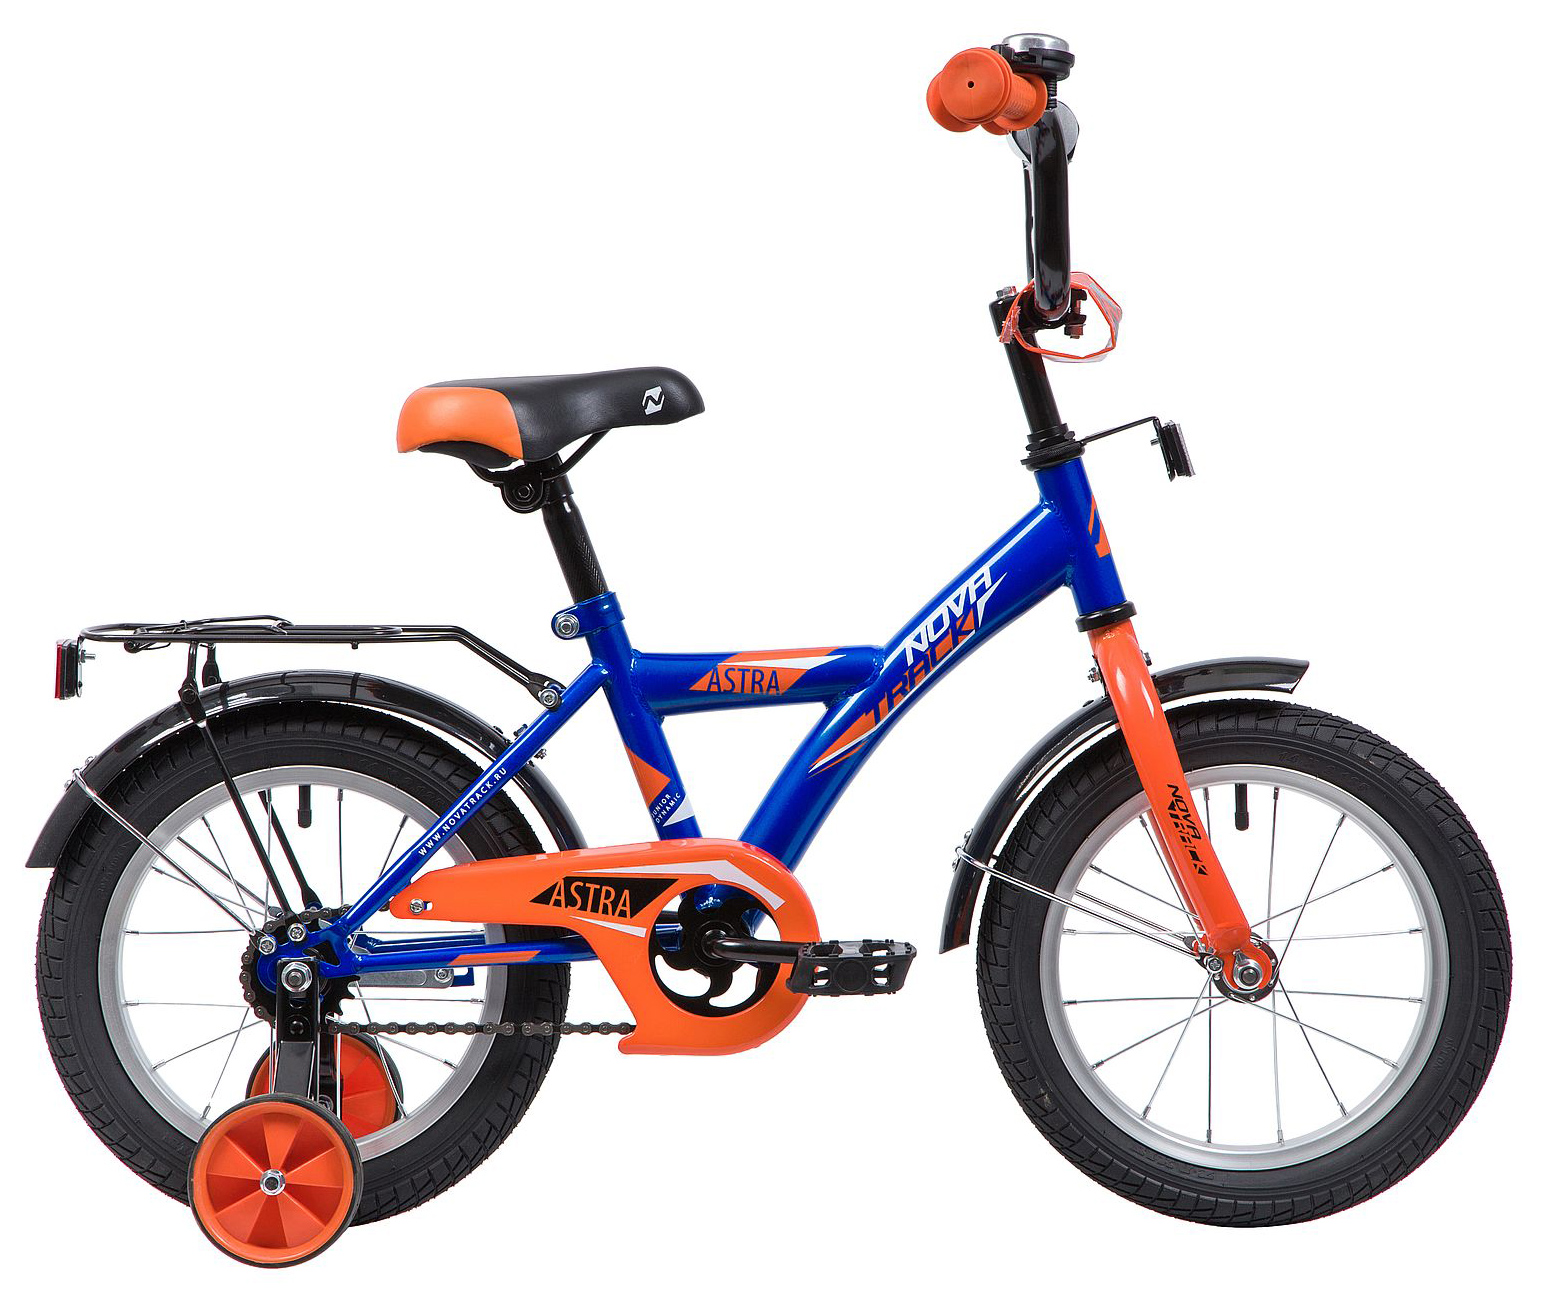  Отзывы о Детском велосипеде Novatrack Astra 14 2019